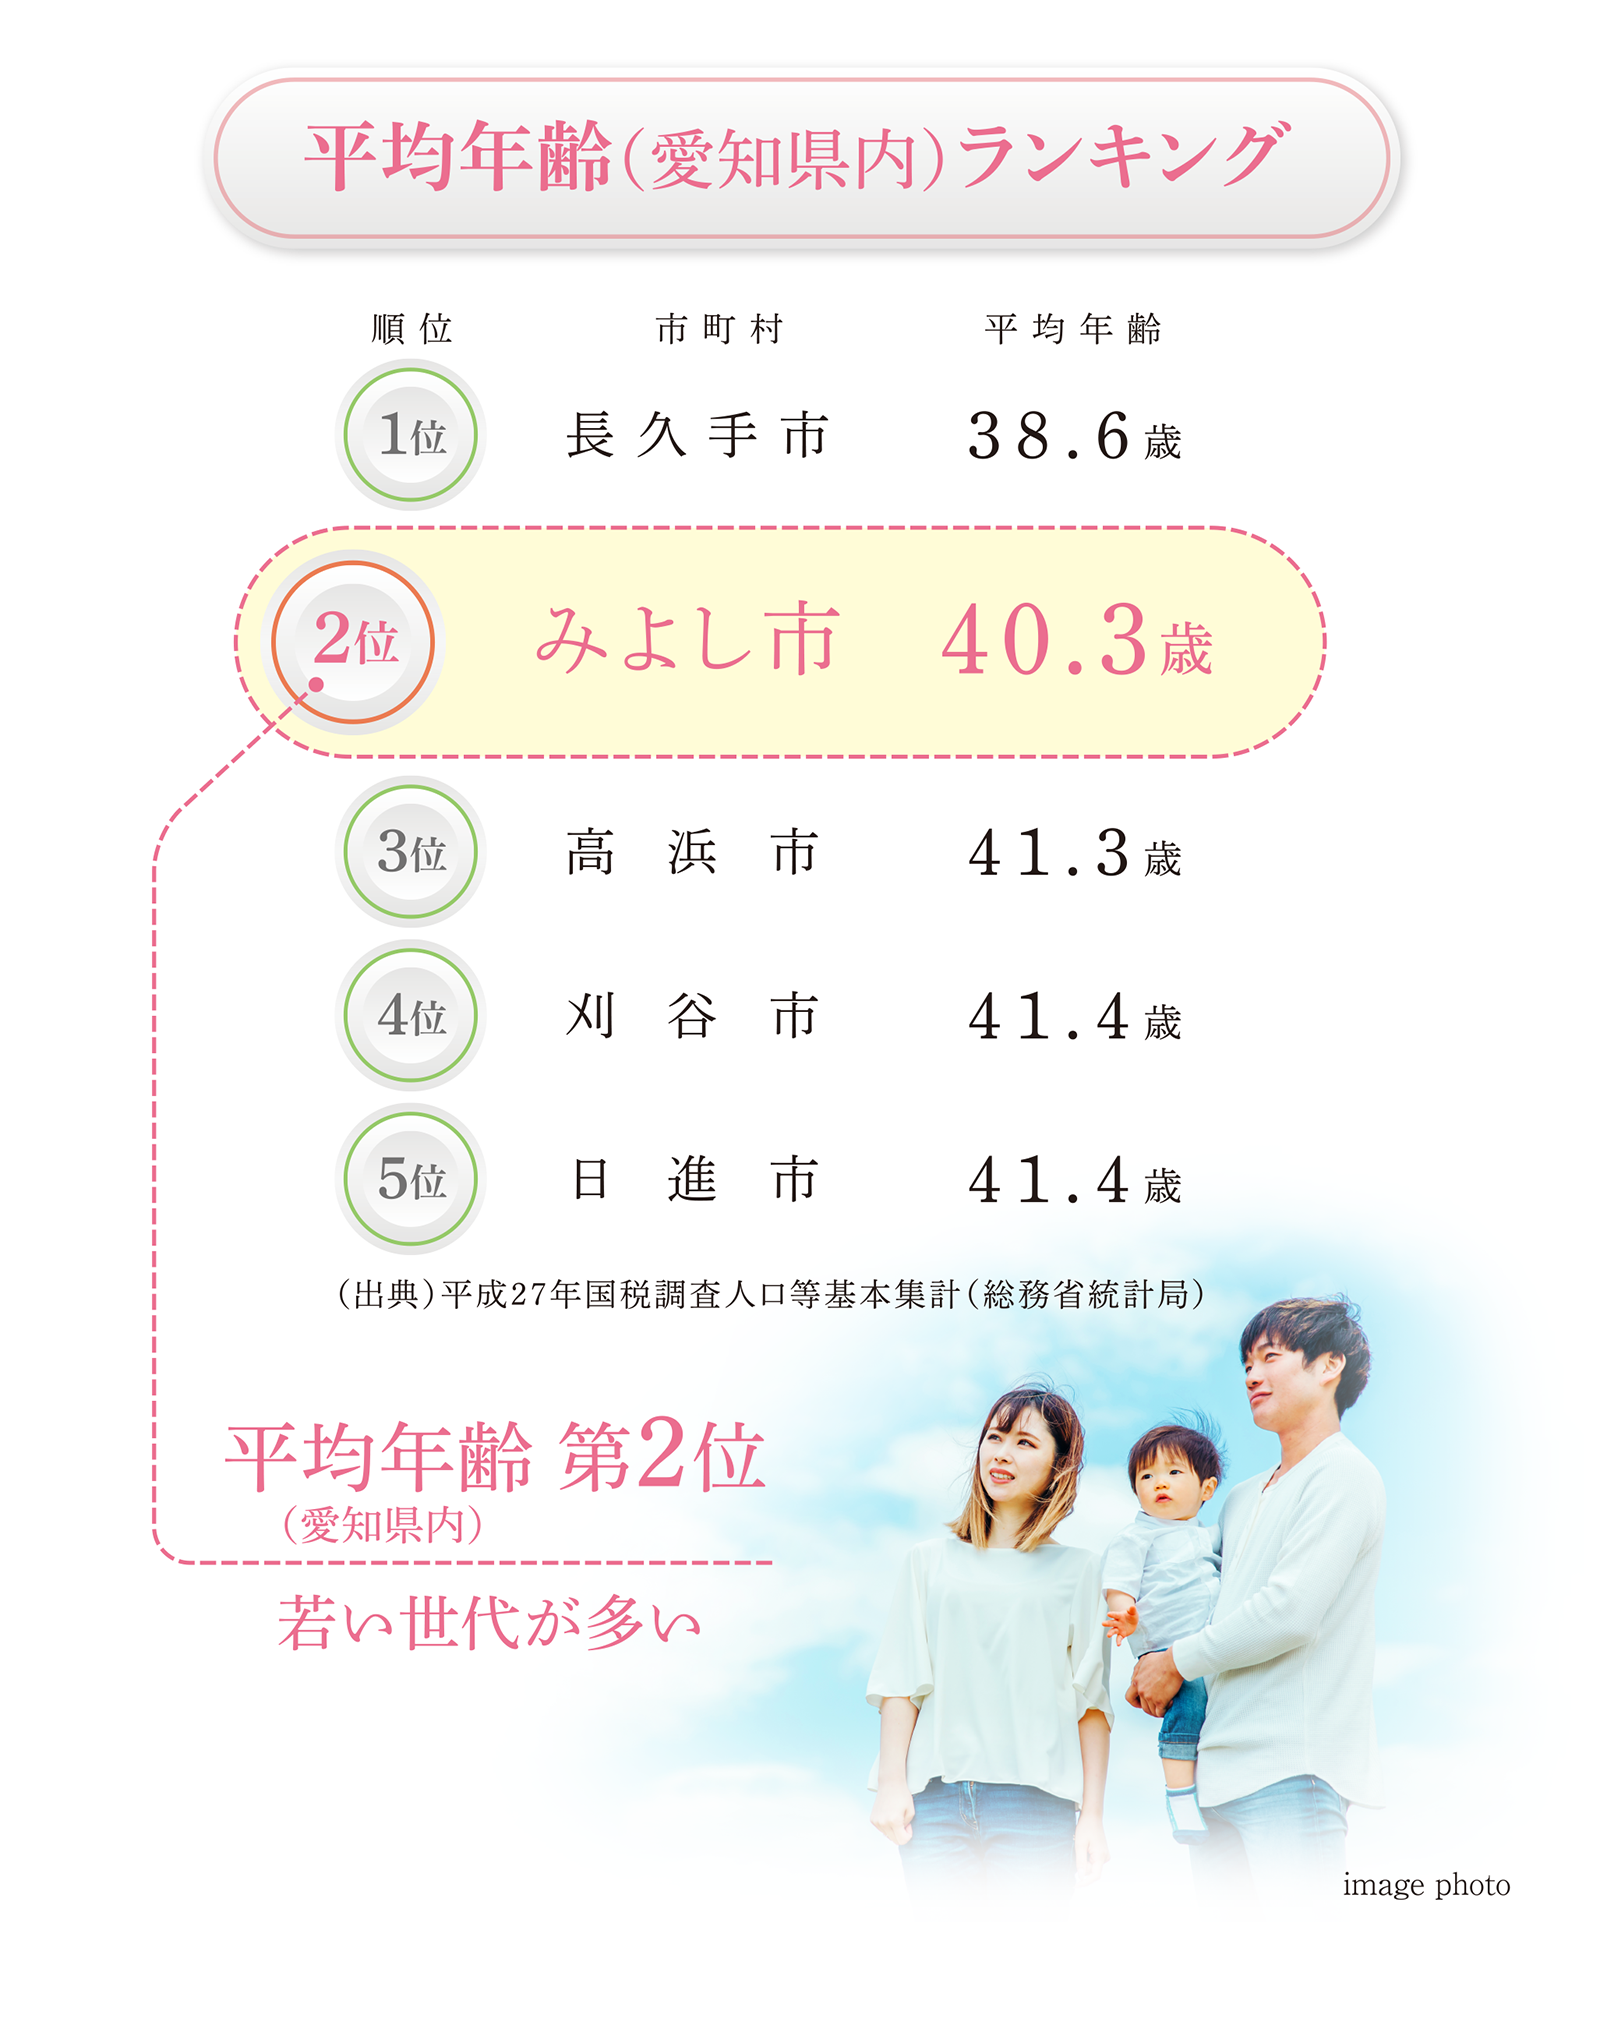 平均年齢（愛知県内）ランキング